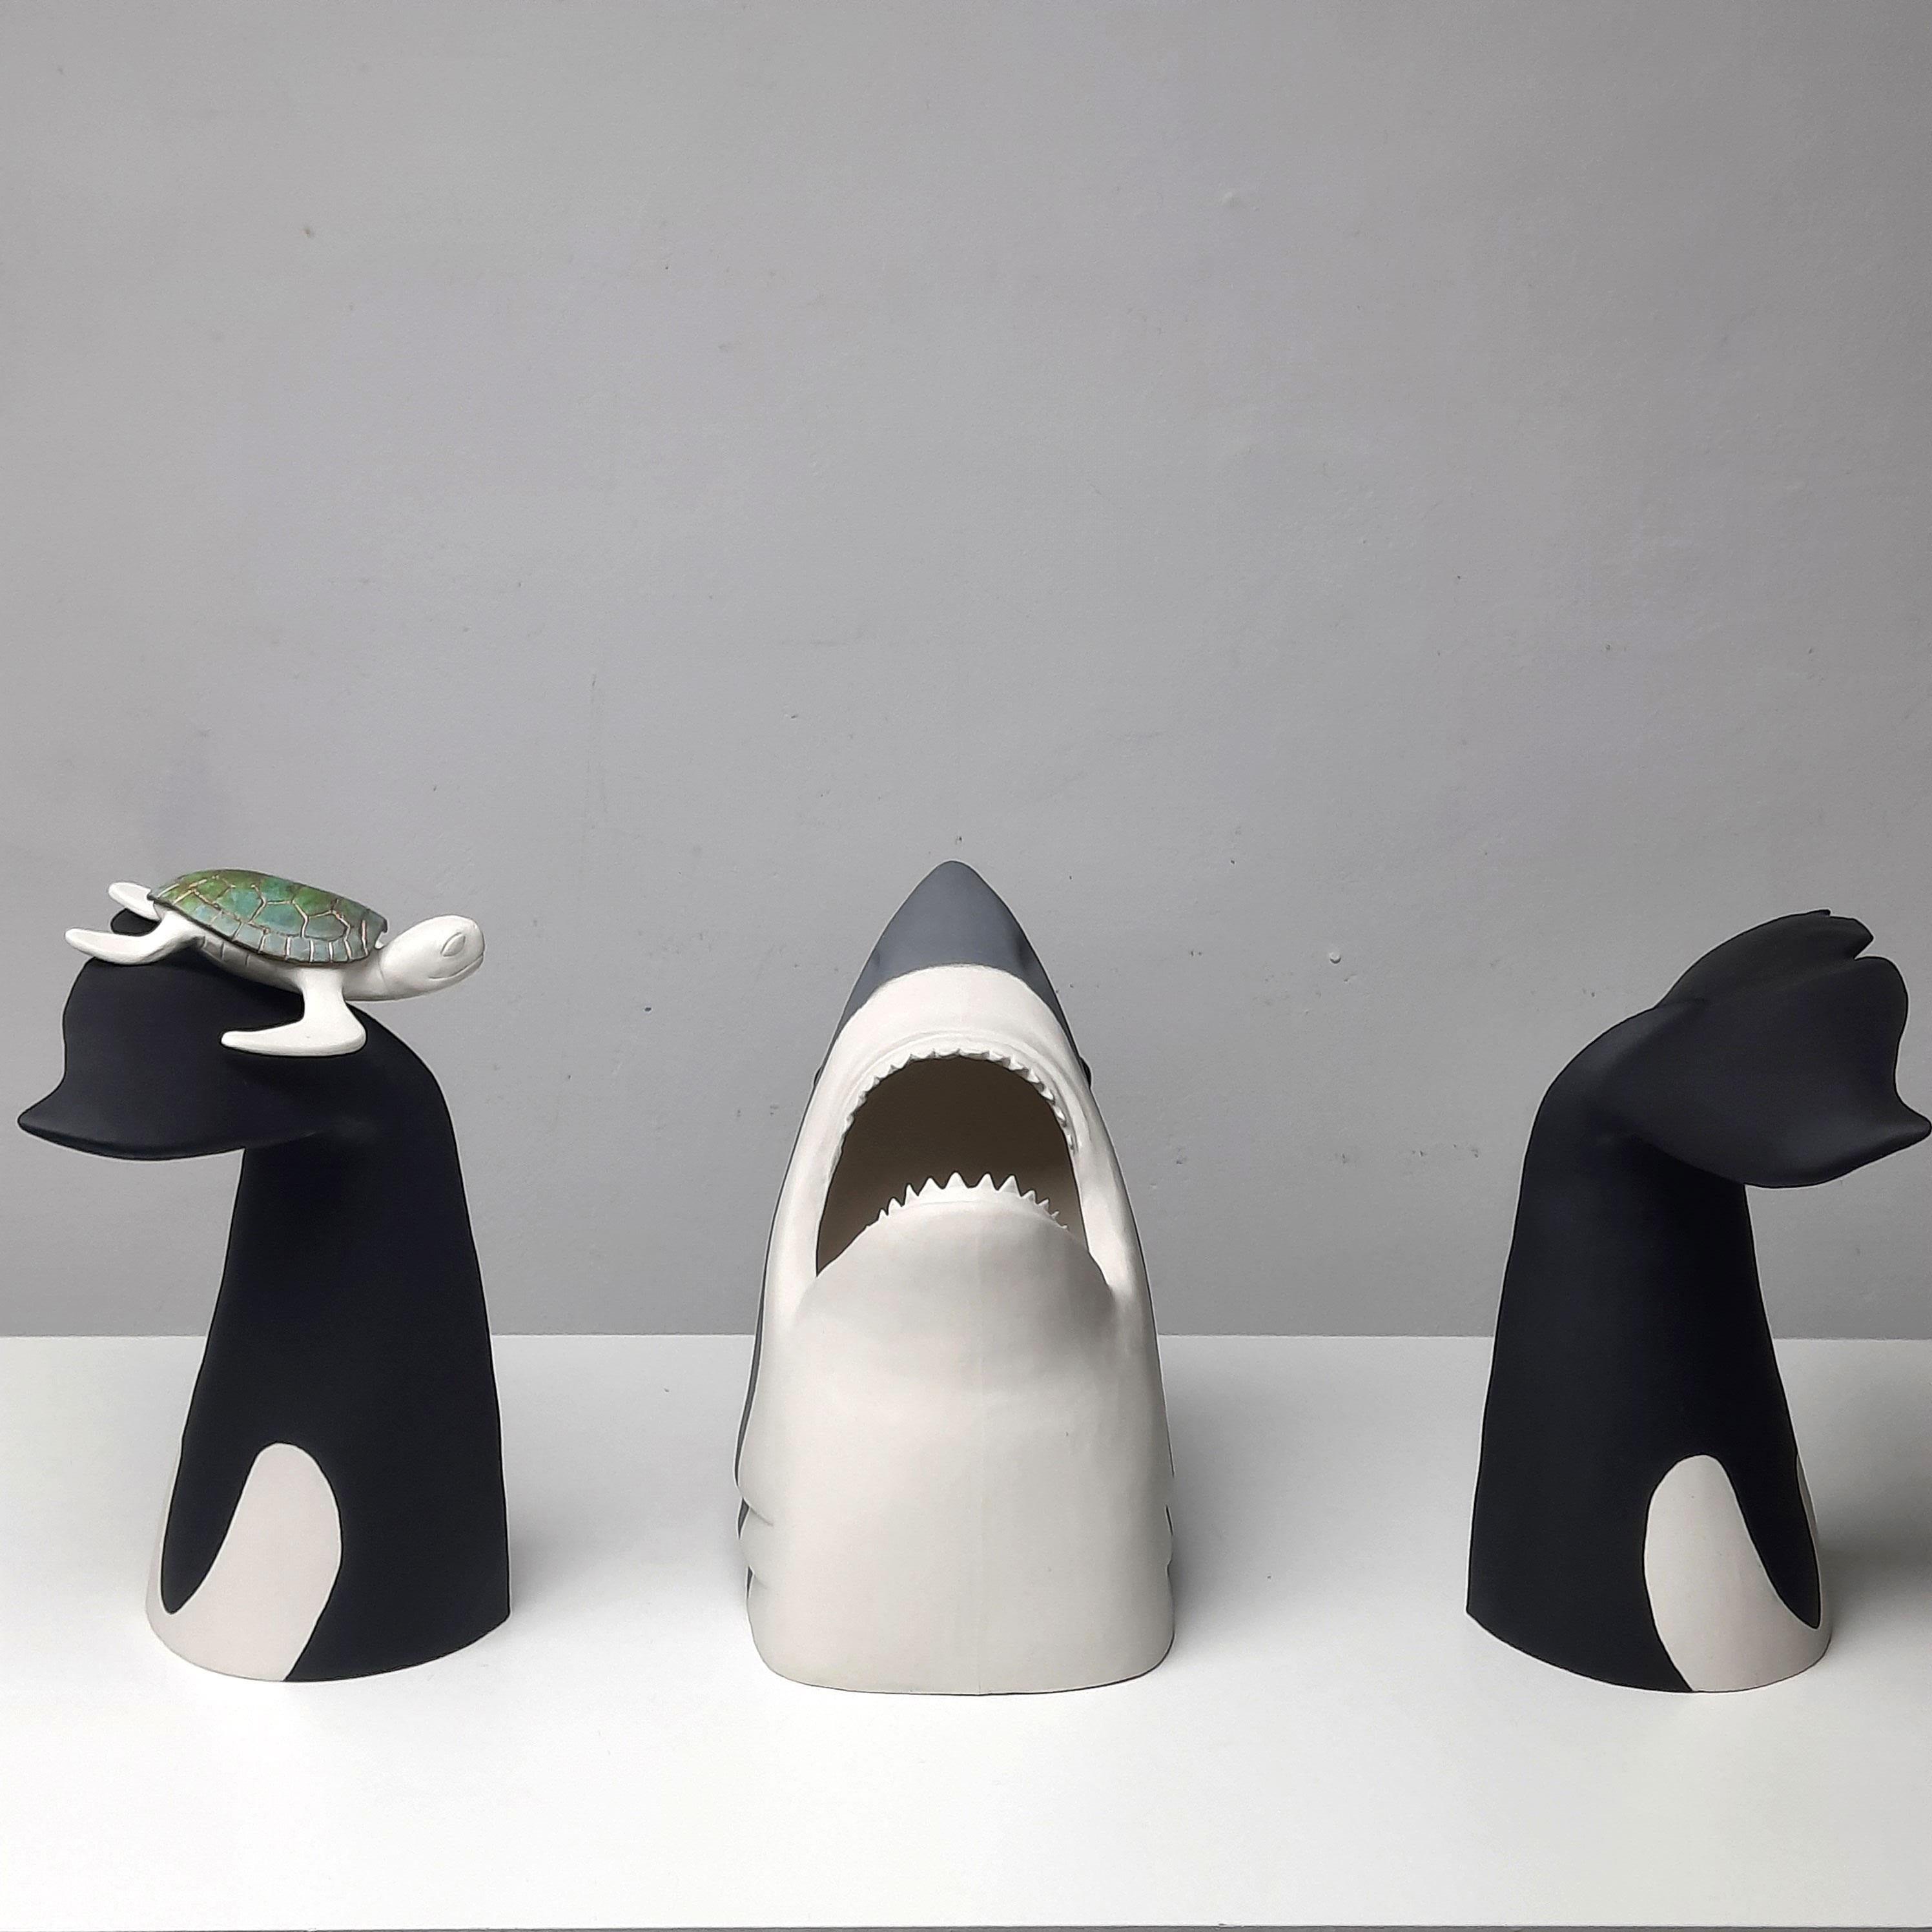 Das Leben ist zu kurz, Relax-originelle realistische Skulptur aus der Tierwelt-zeitgenössische Kunst – Art von Henk Jan Sanderman